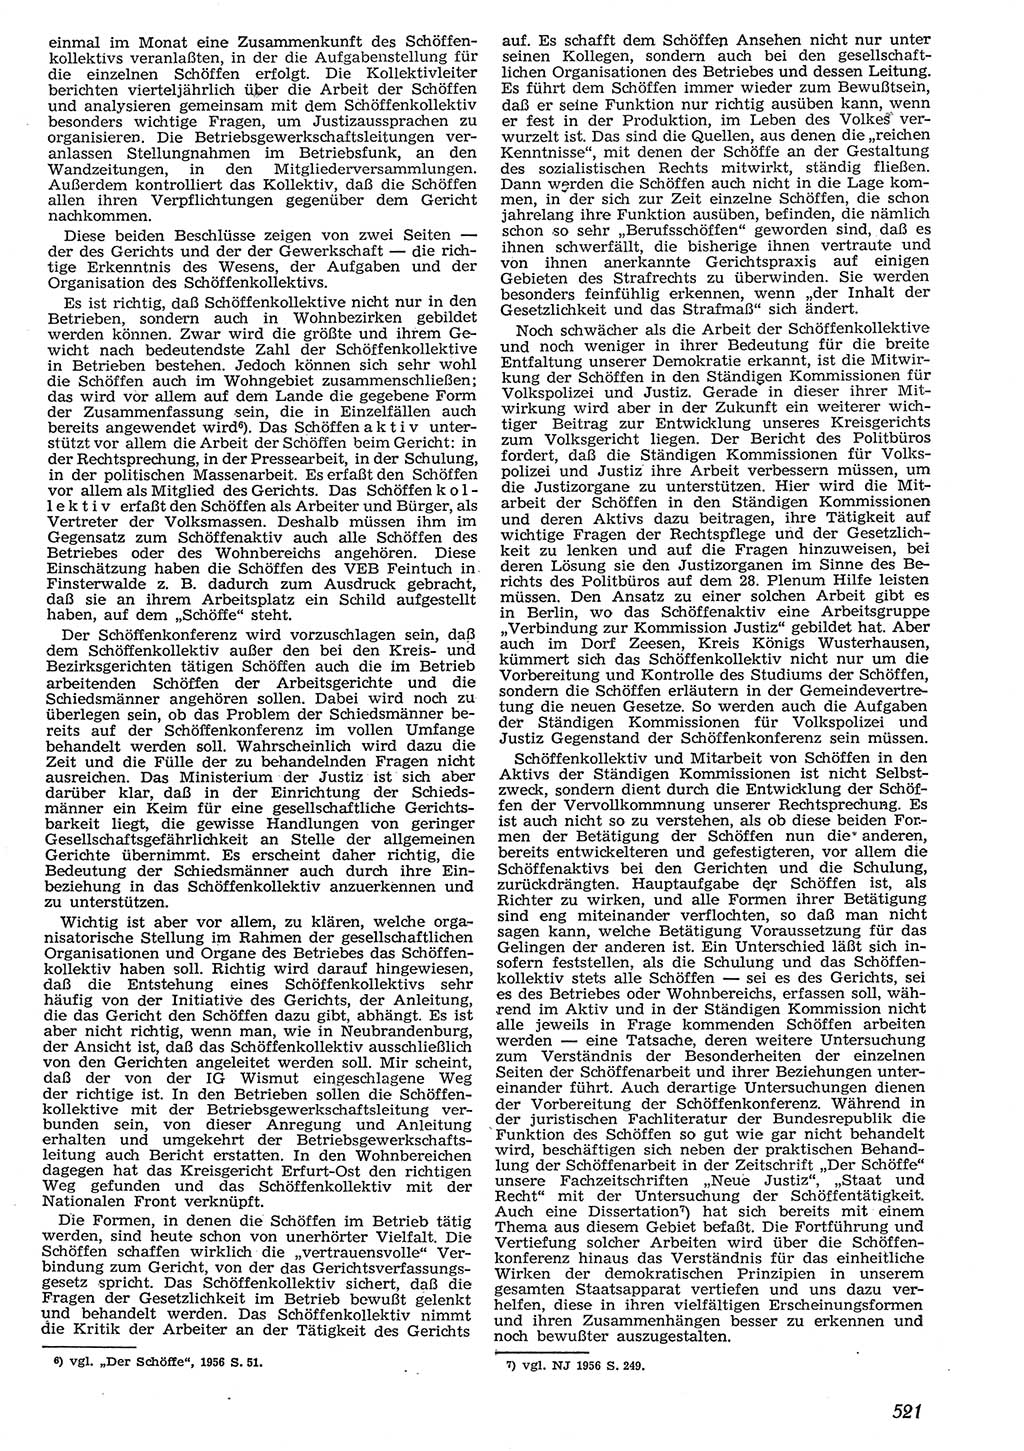 Neue Justiz (NJ), Zeitschrift für Recht und Rechtswissenschaft [Deutsche Demokratische Republik (DDR)], 10. Jahrgang 1956, Seite 521 (NJ DDR 1956, S. 521)